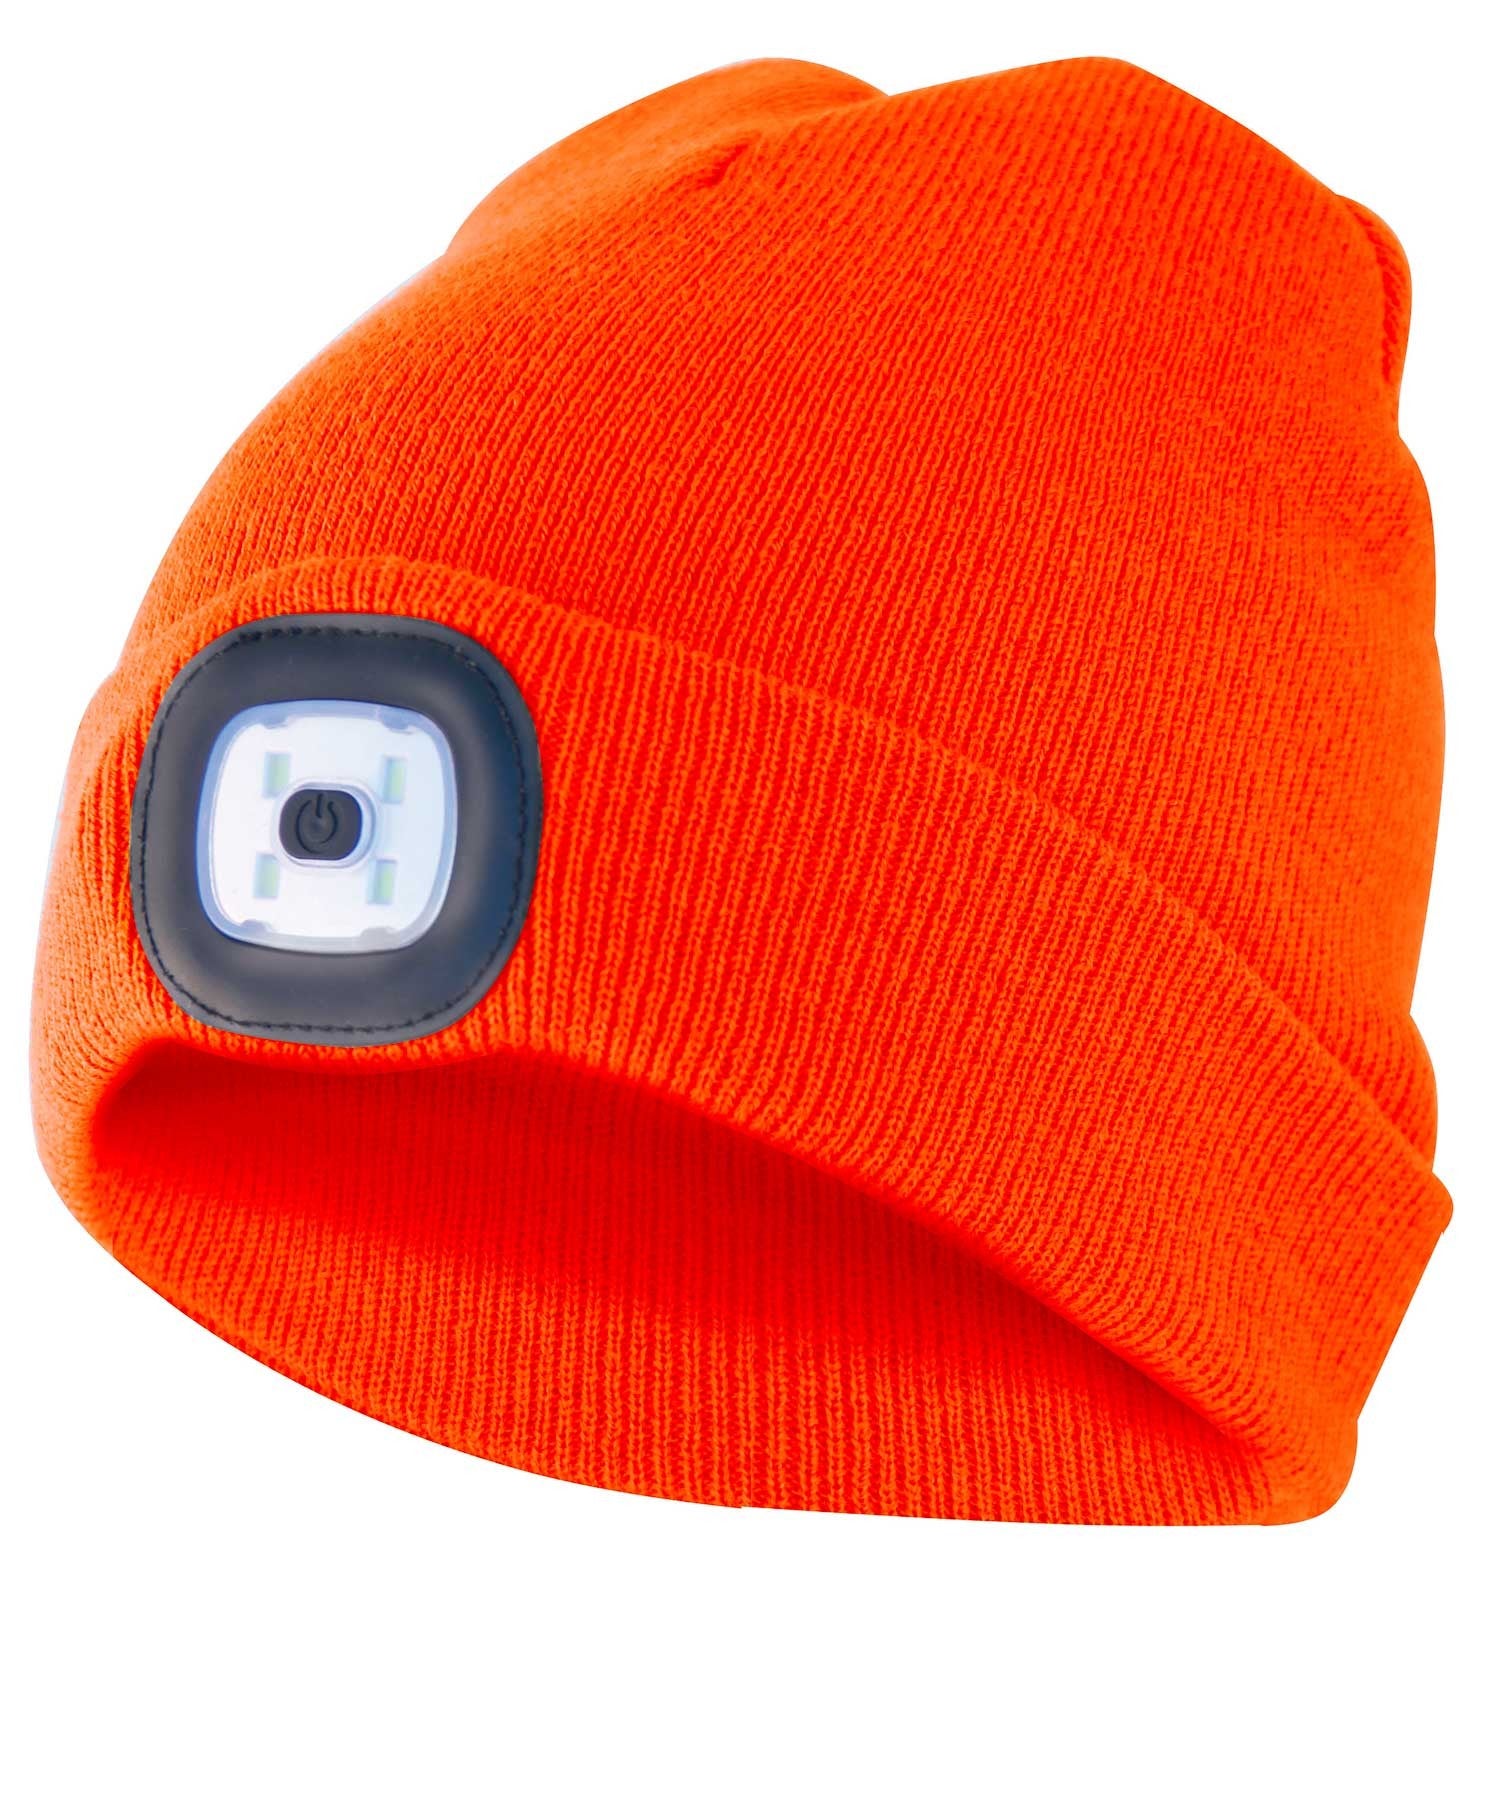 LIGHTHOUSE: Bonnet avec lampe frontale LED rechargeable. Orange